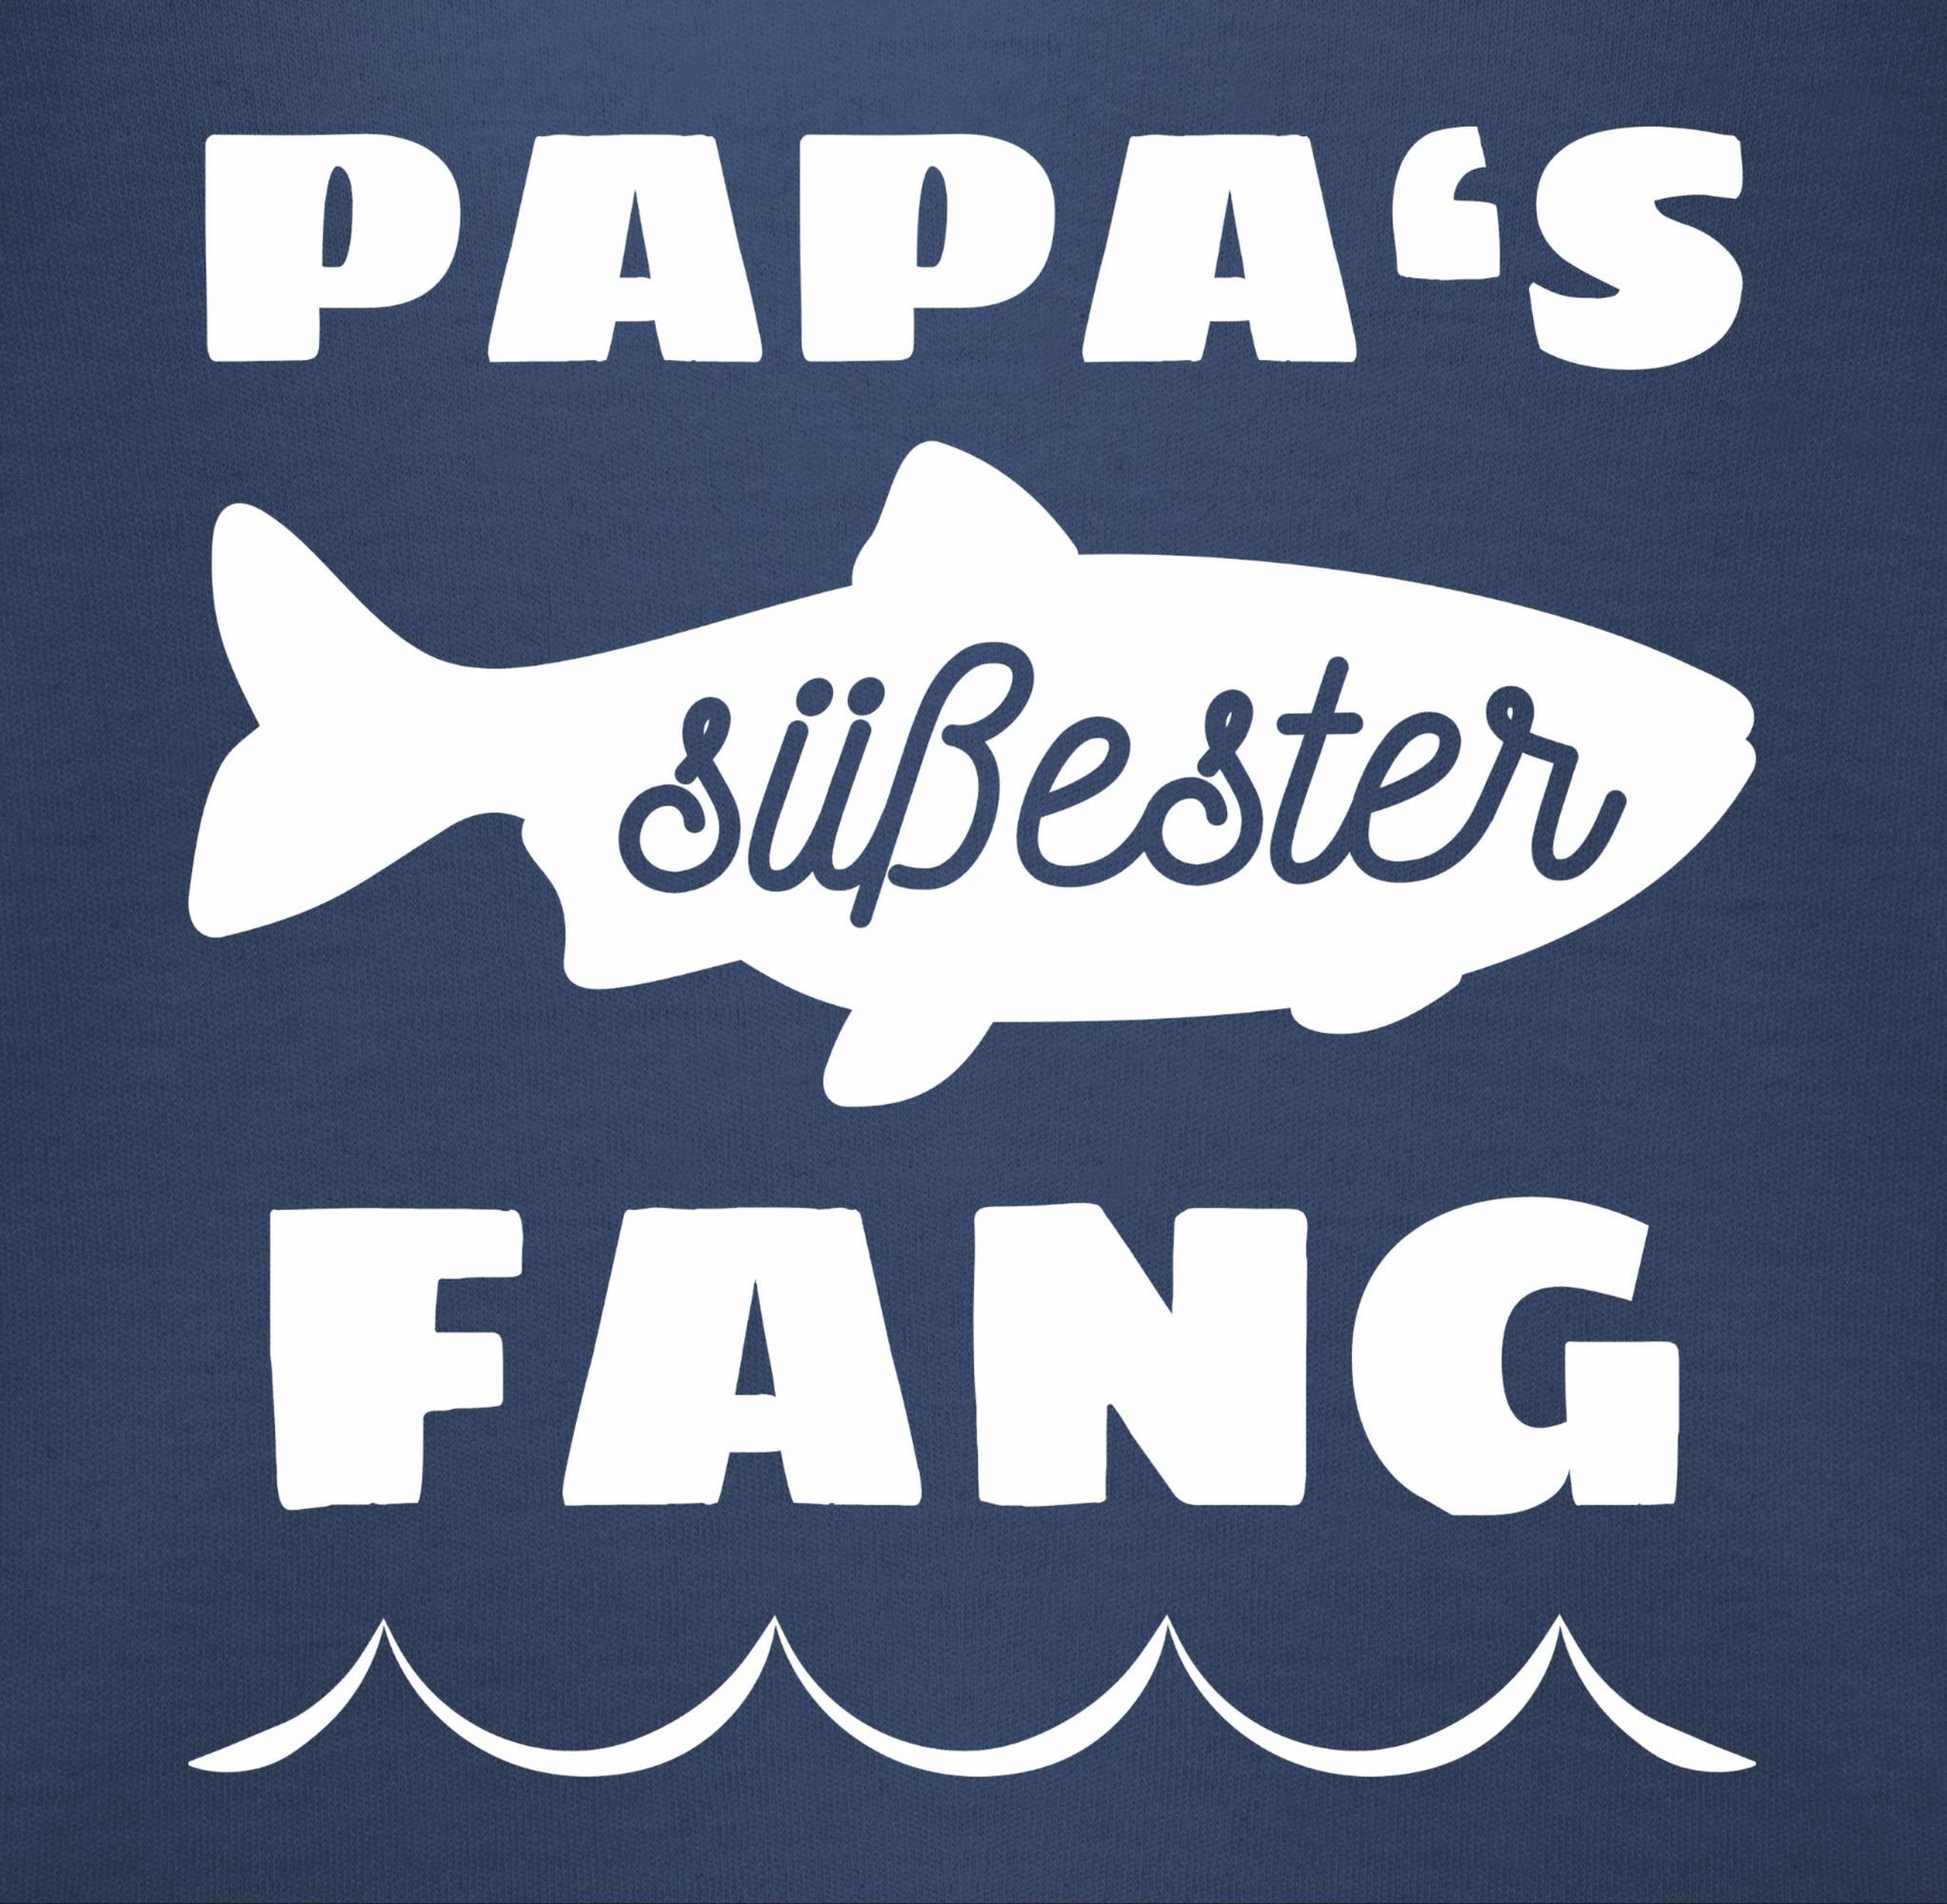 Fang Papas Blau Navy T-Shirt Shirtracer Vatertag 1 süßester Geschenk Baby